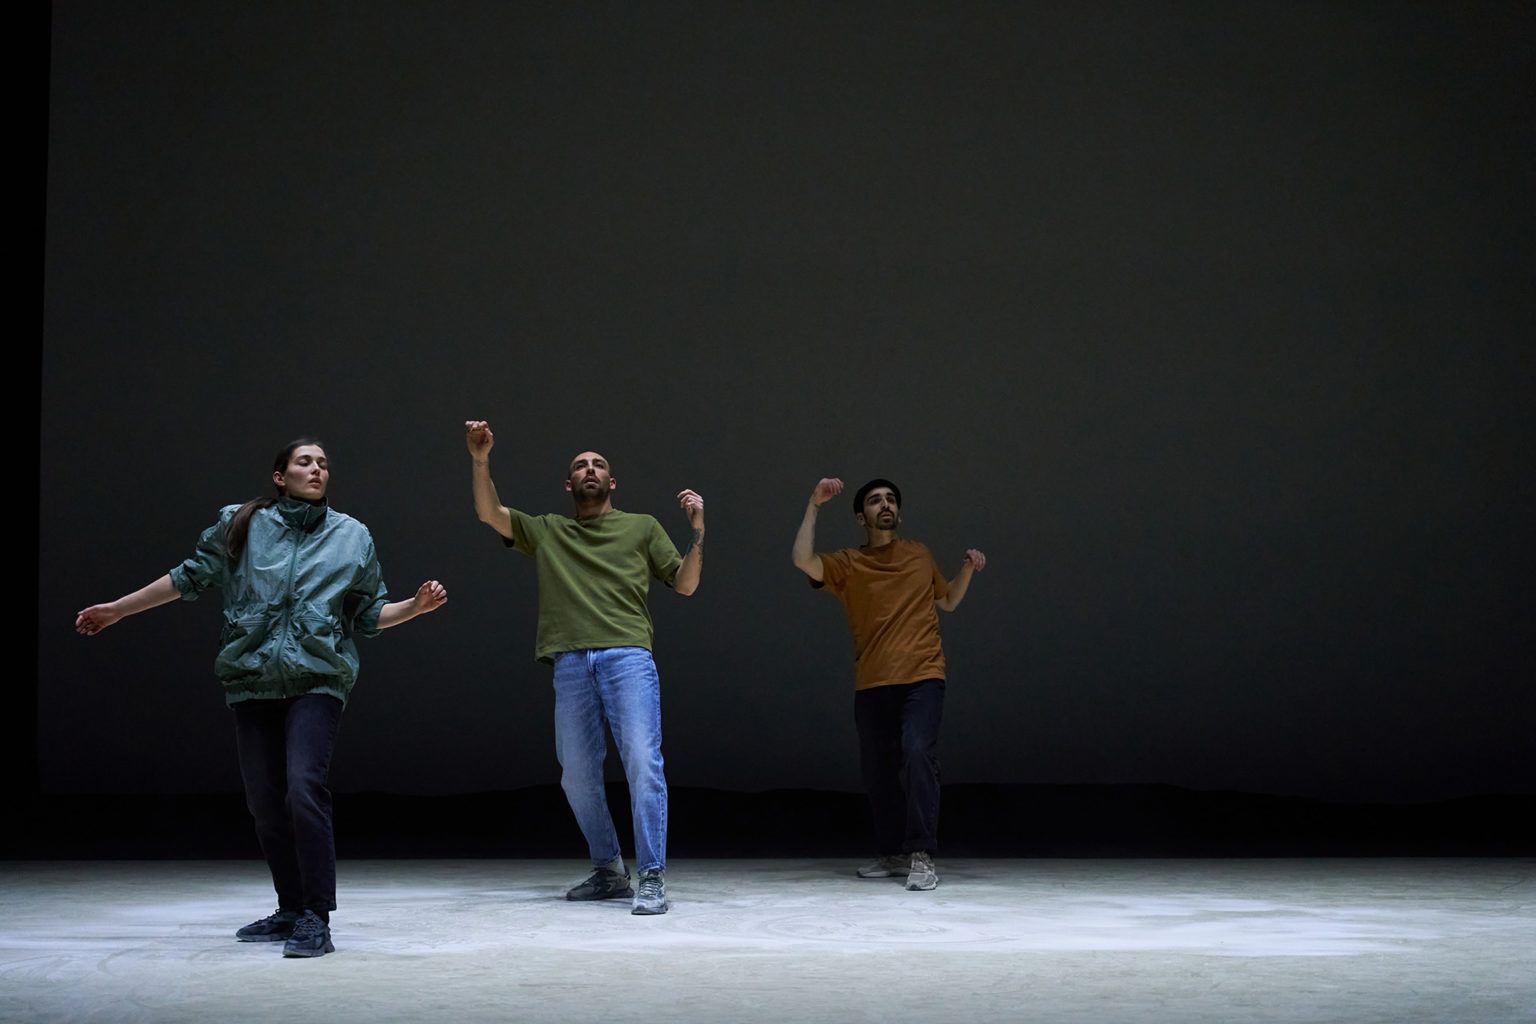 Photo du spectacle "Paysage" où l'on voit les 3 danseurs debout au milieu du grand plateau vide, comme s'ils allaient tomber.